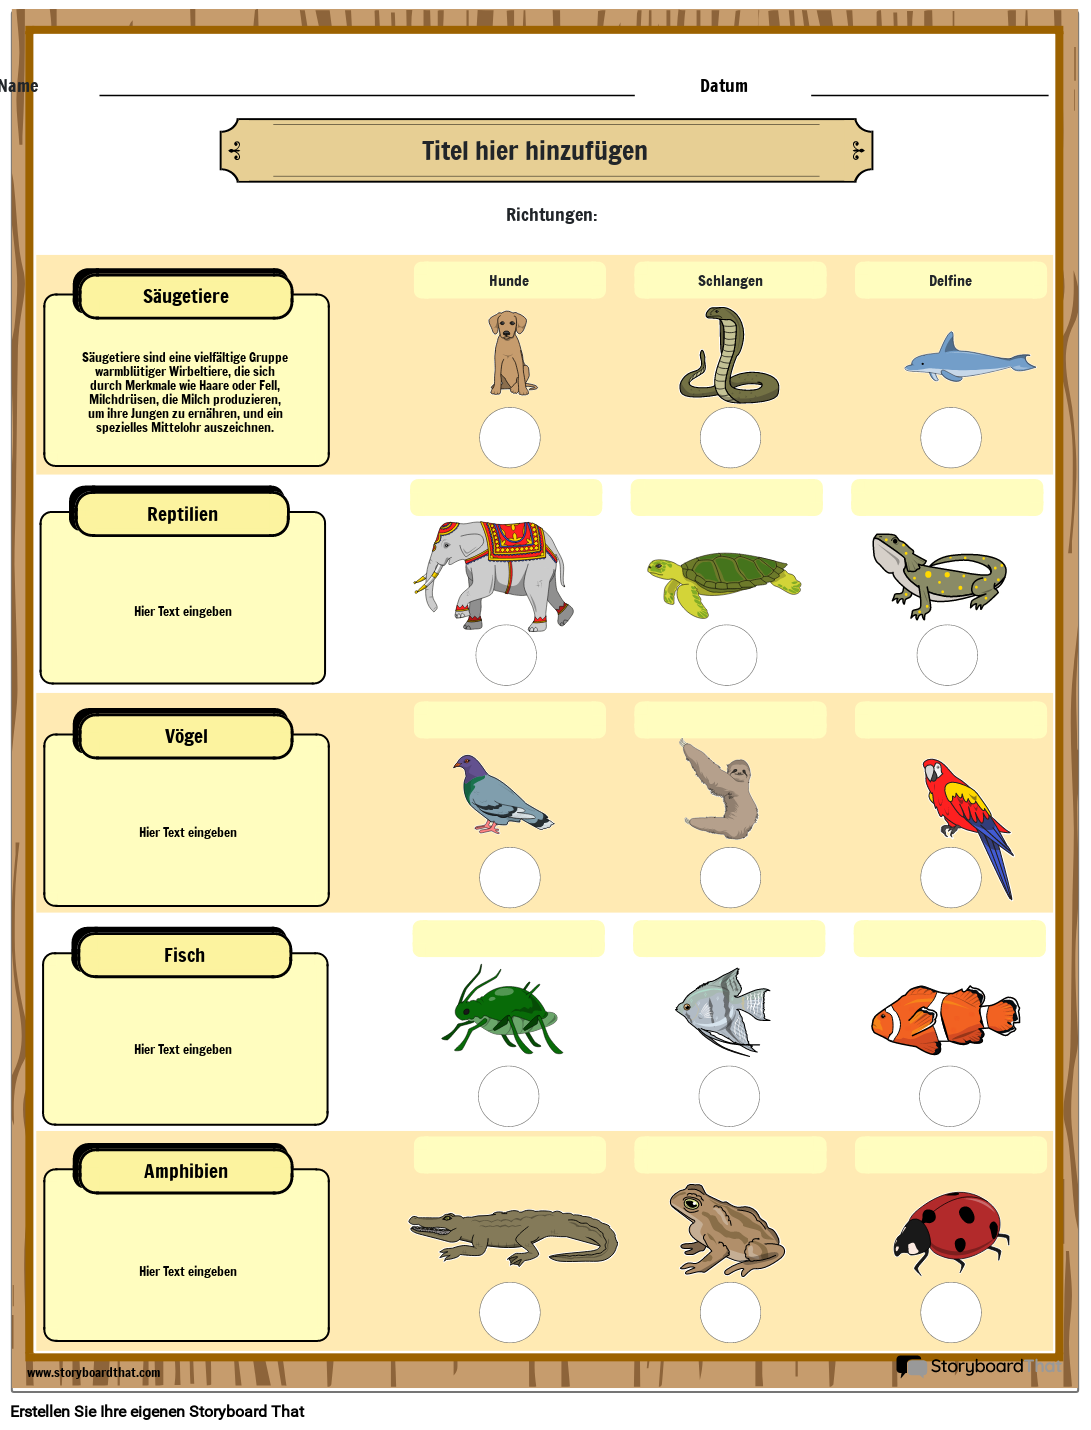 Arbeitsblatt zur Klassifizierung von Tieren